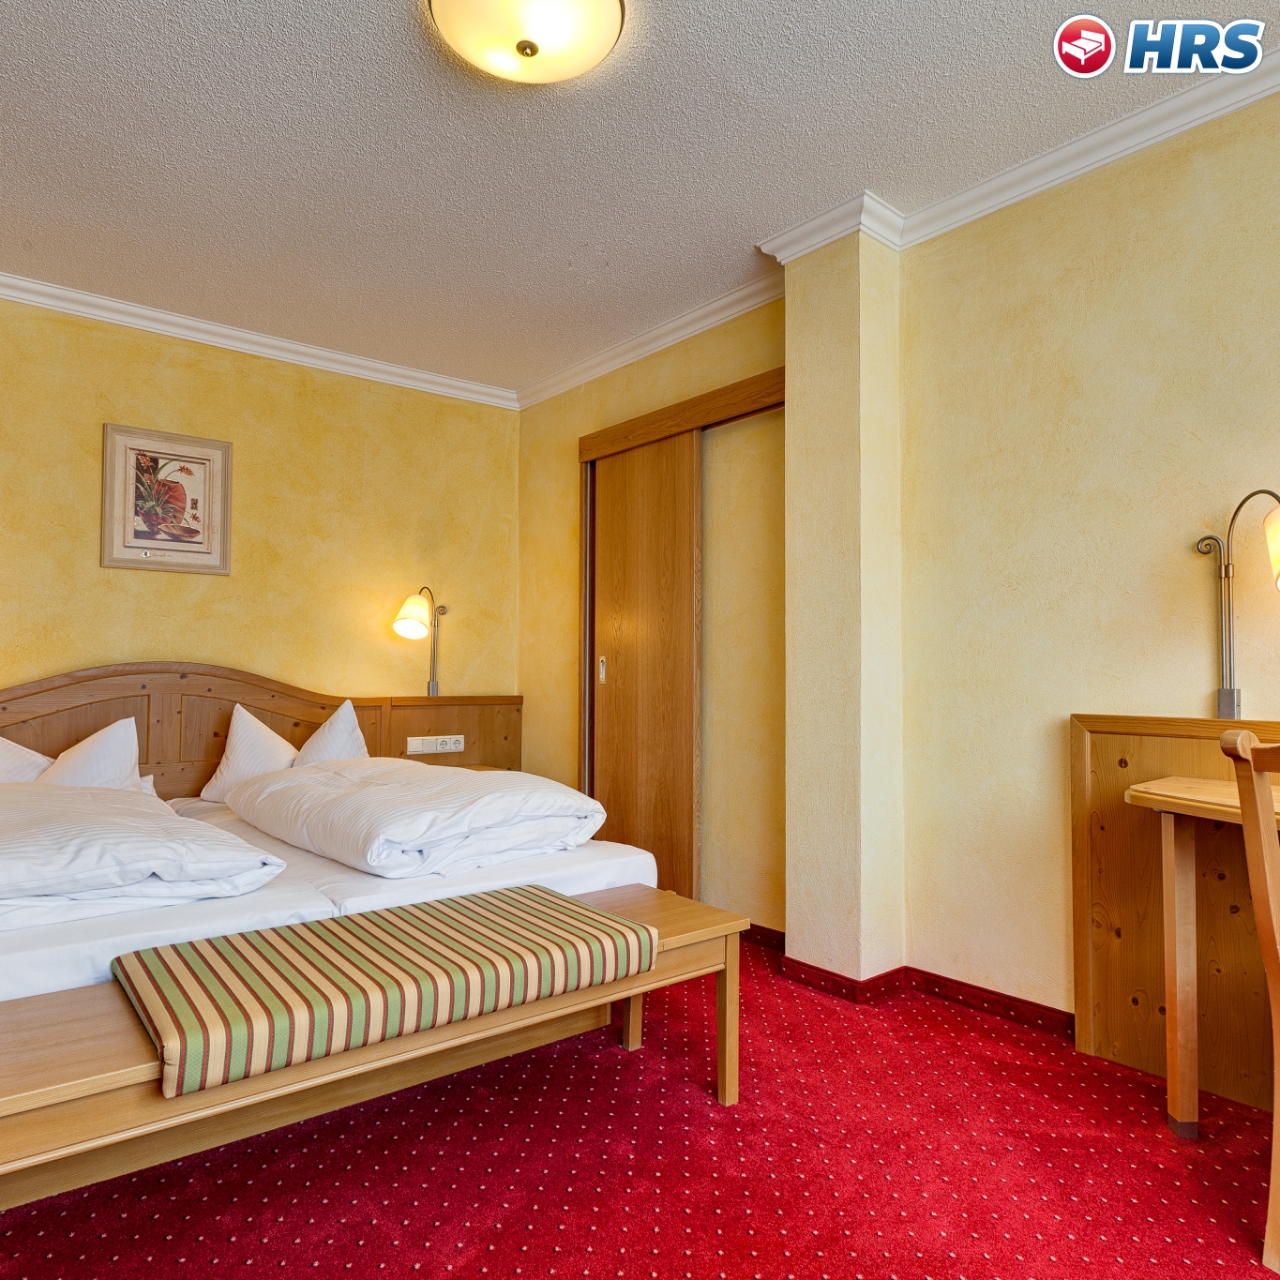 Hotel Reif Gasthof in Königstein bei HRS günstig buchen